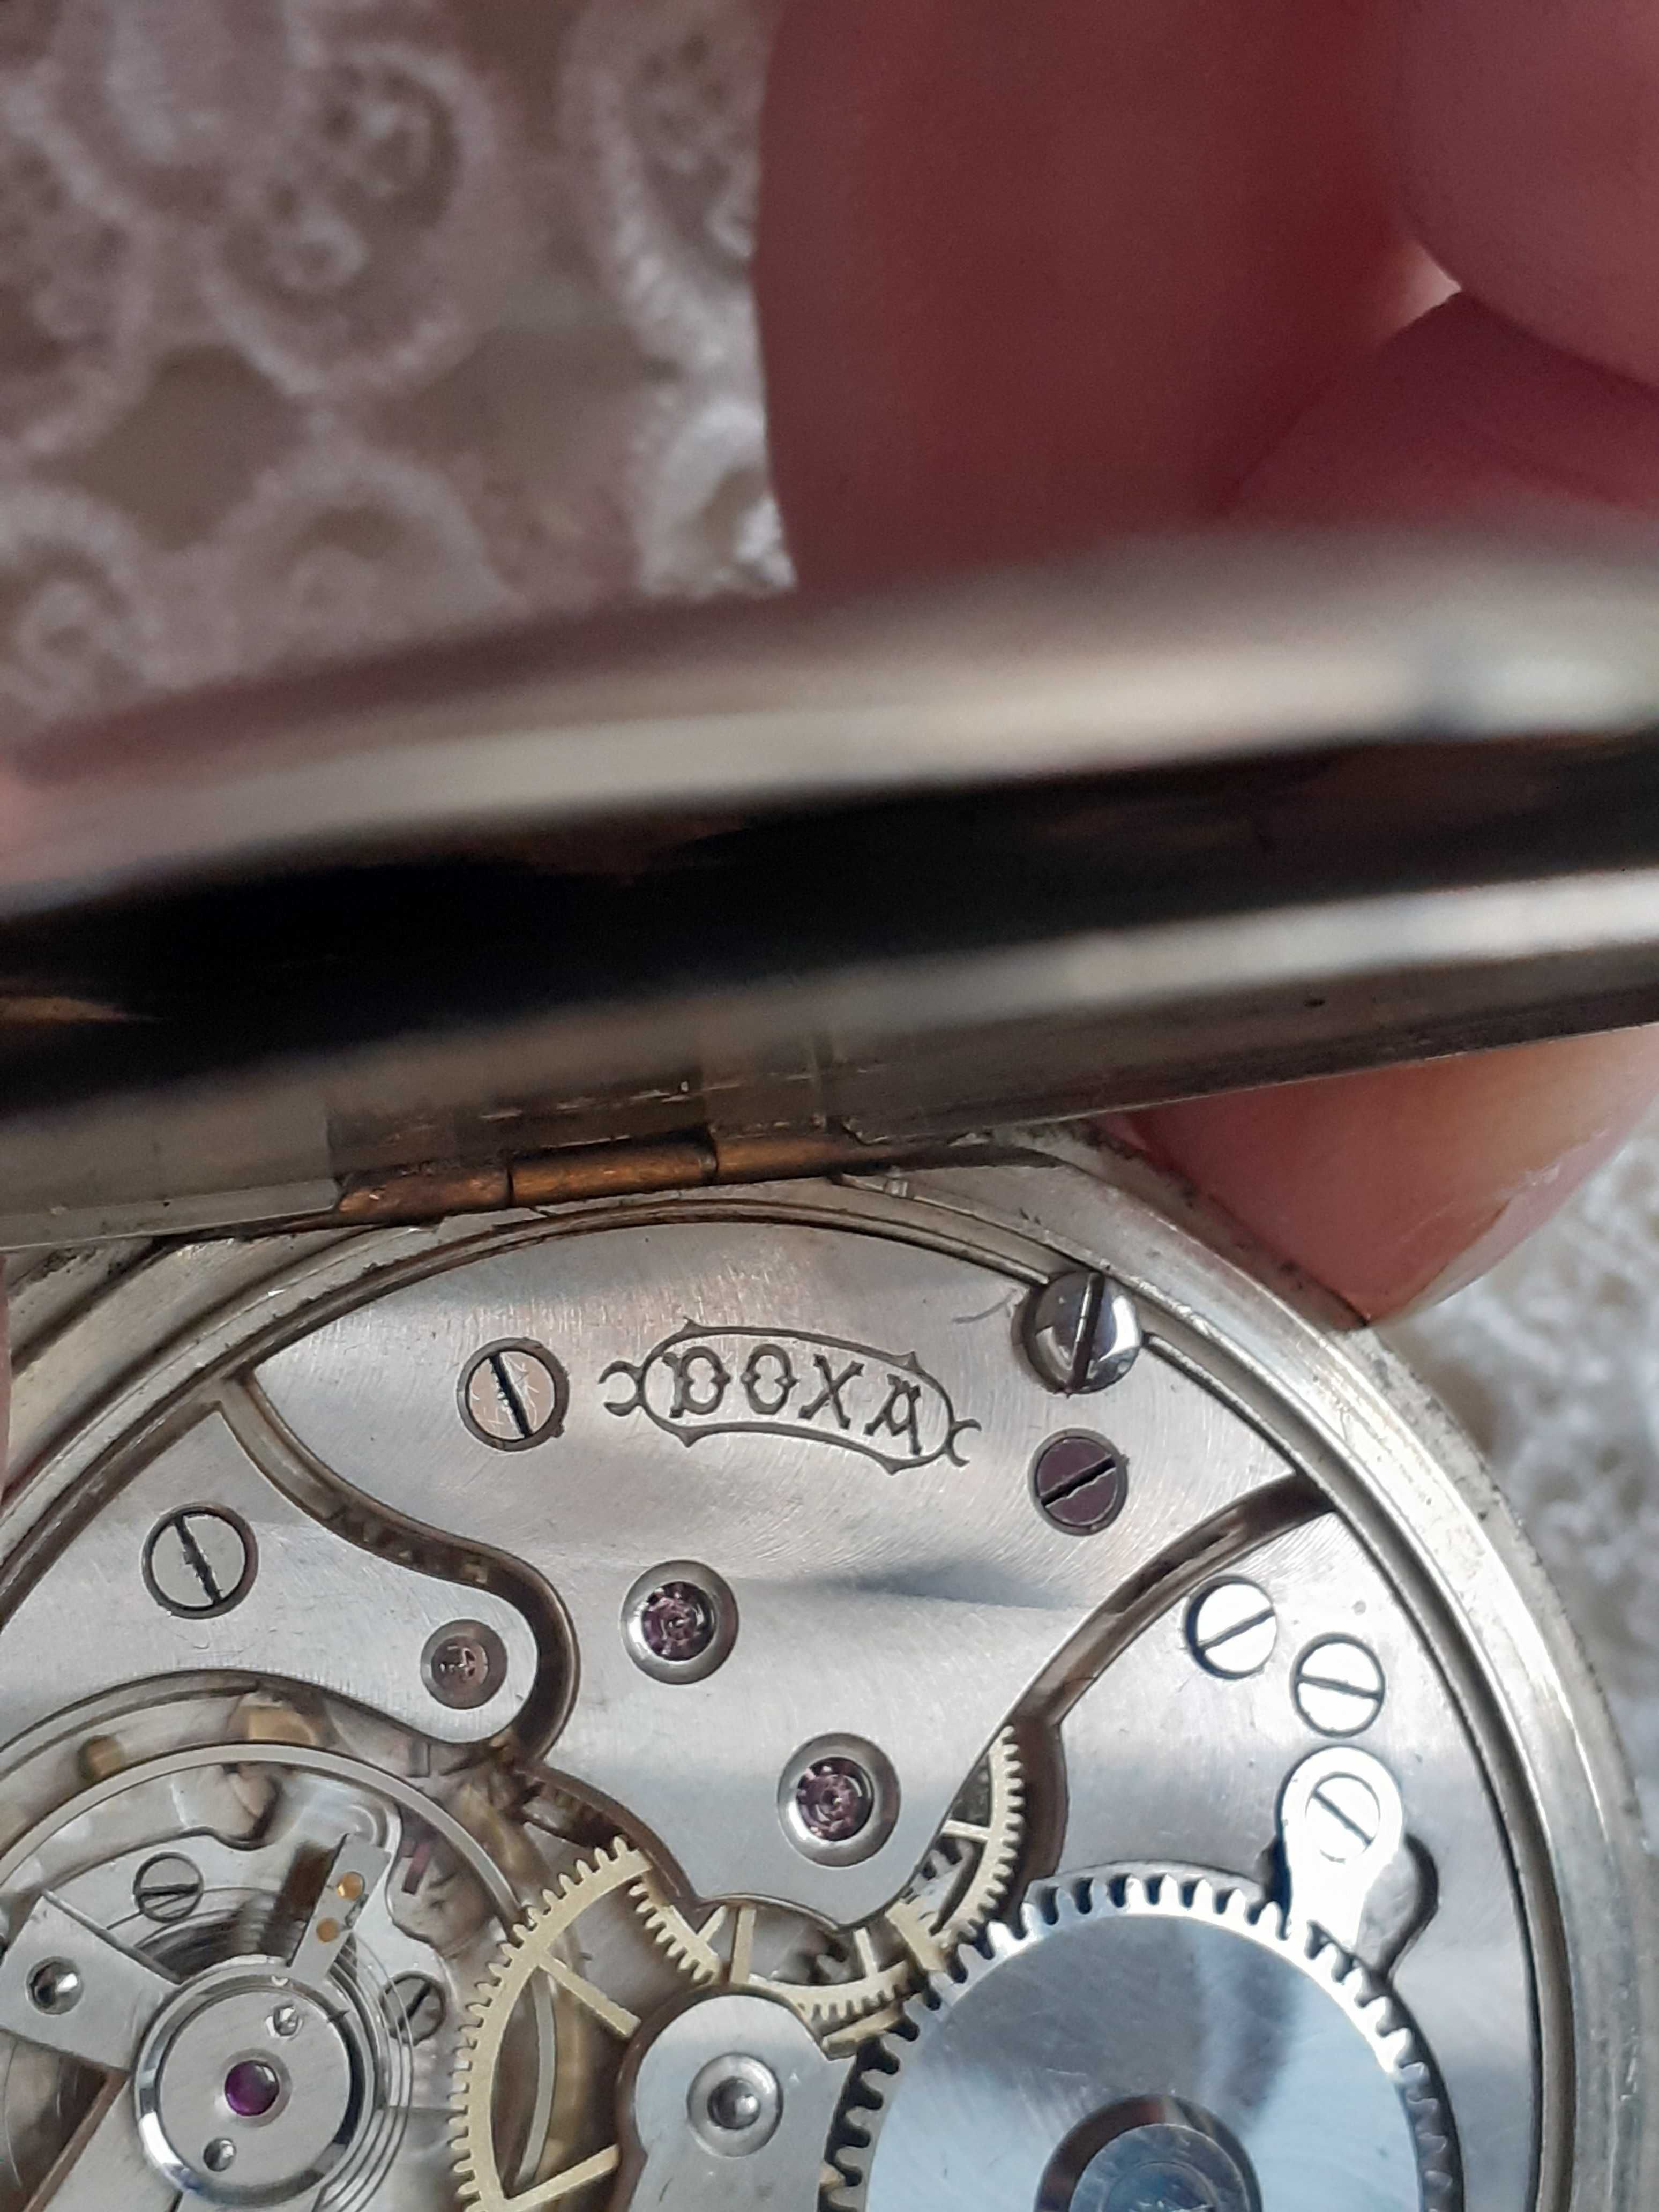 Doxa -zegarek kieszonkowy z 1905r.medalowy